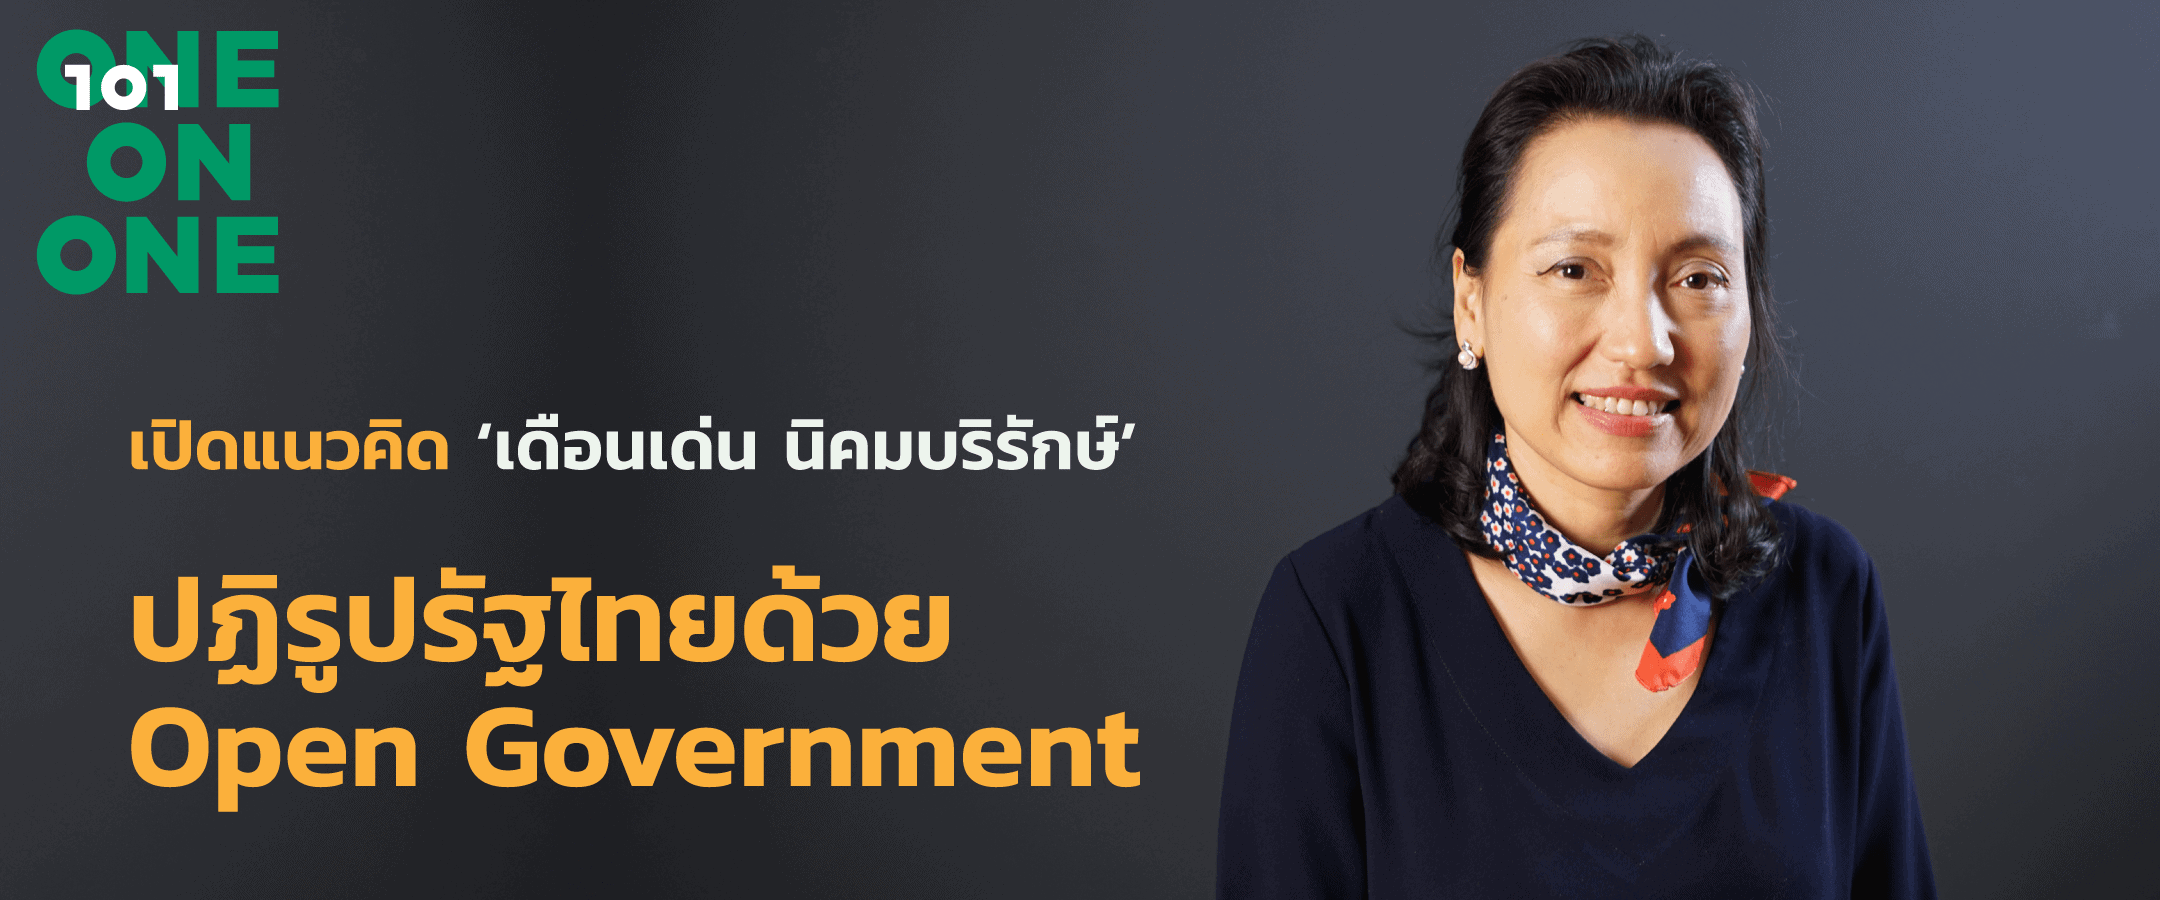 เปิดแนวคิด 'เดือนเด่น นิคมบริรักษ์' ปฏิรูปรัฐไทยด้วย open government